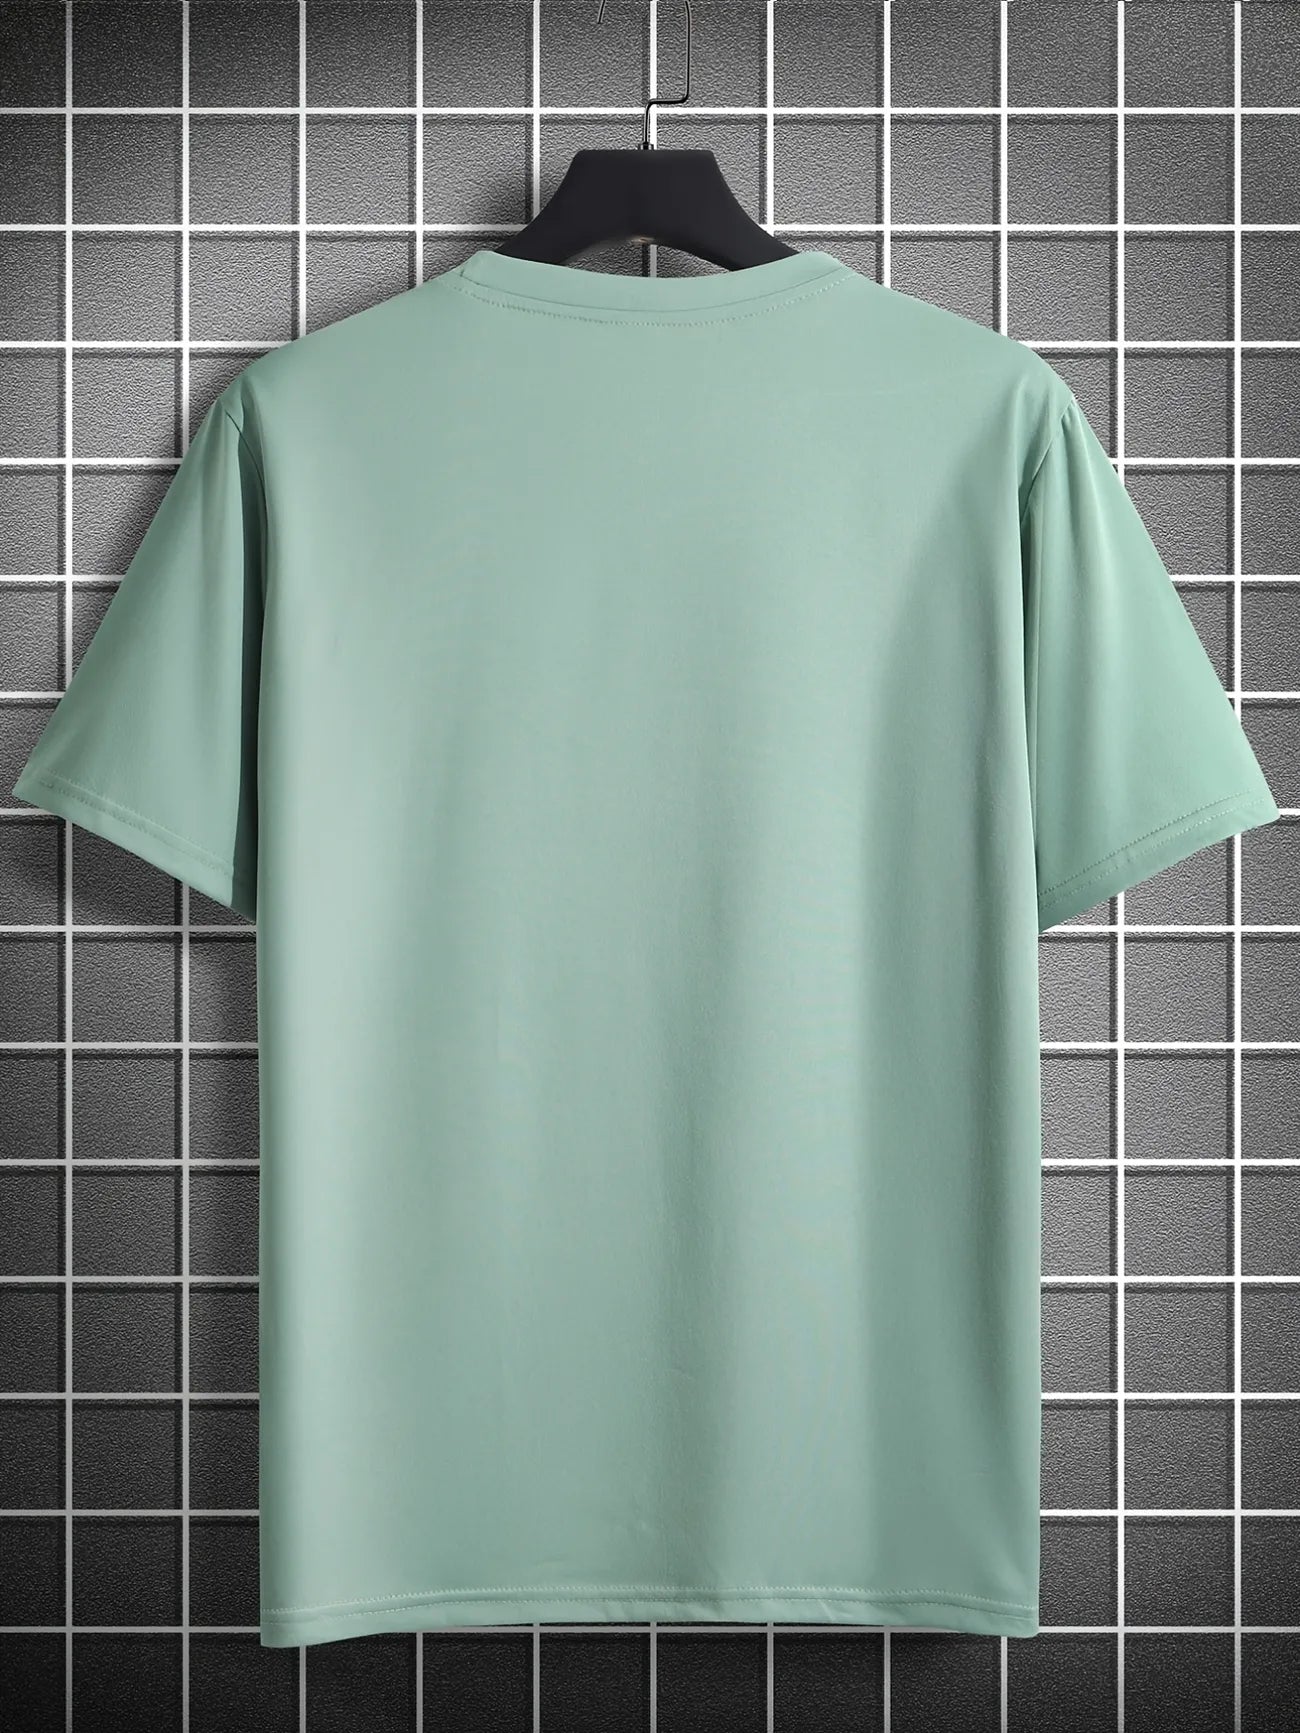 Mens Cotton Sticker Printed T-Shirt TTMPS97 - Mint Green